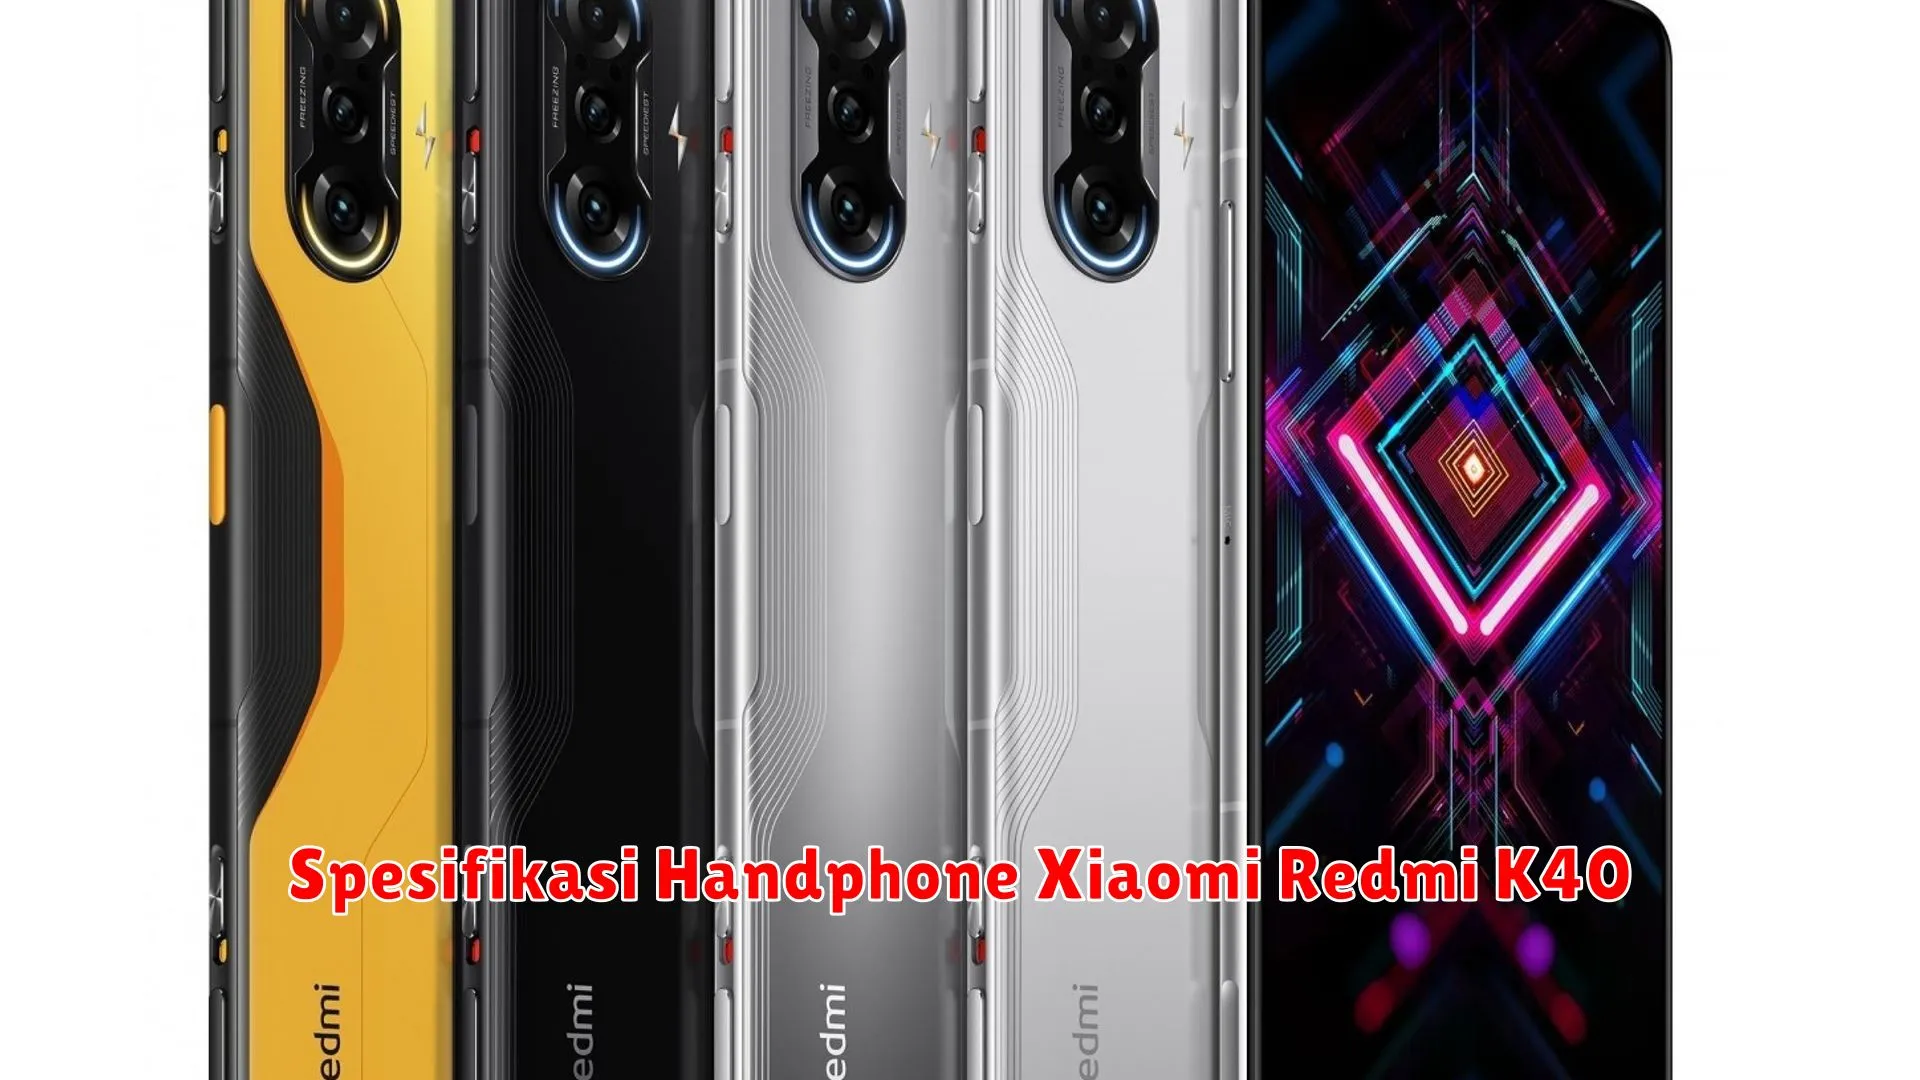 Spesifikasi Handphone Xiaomi Redmi K40